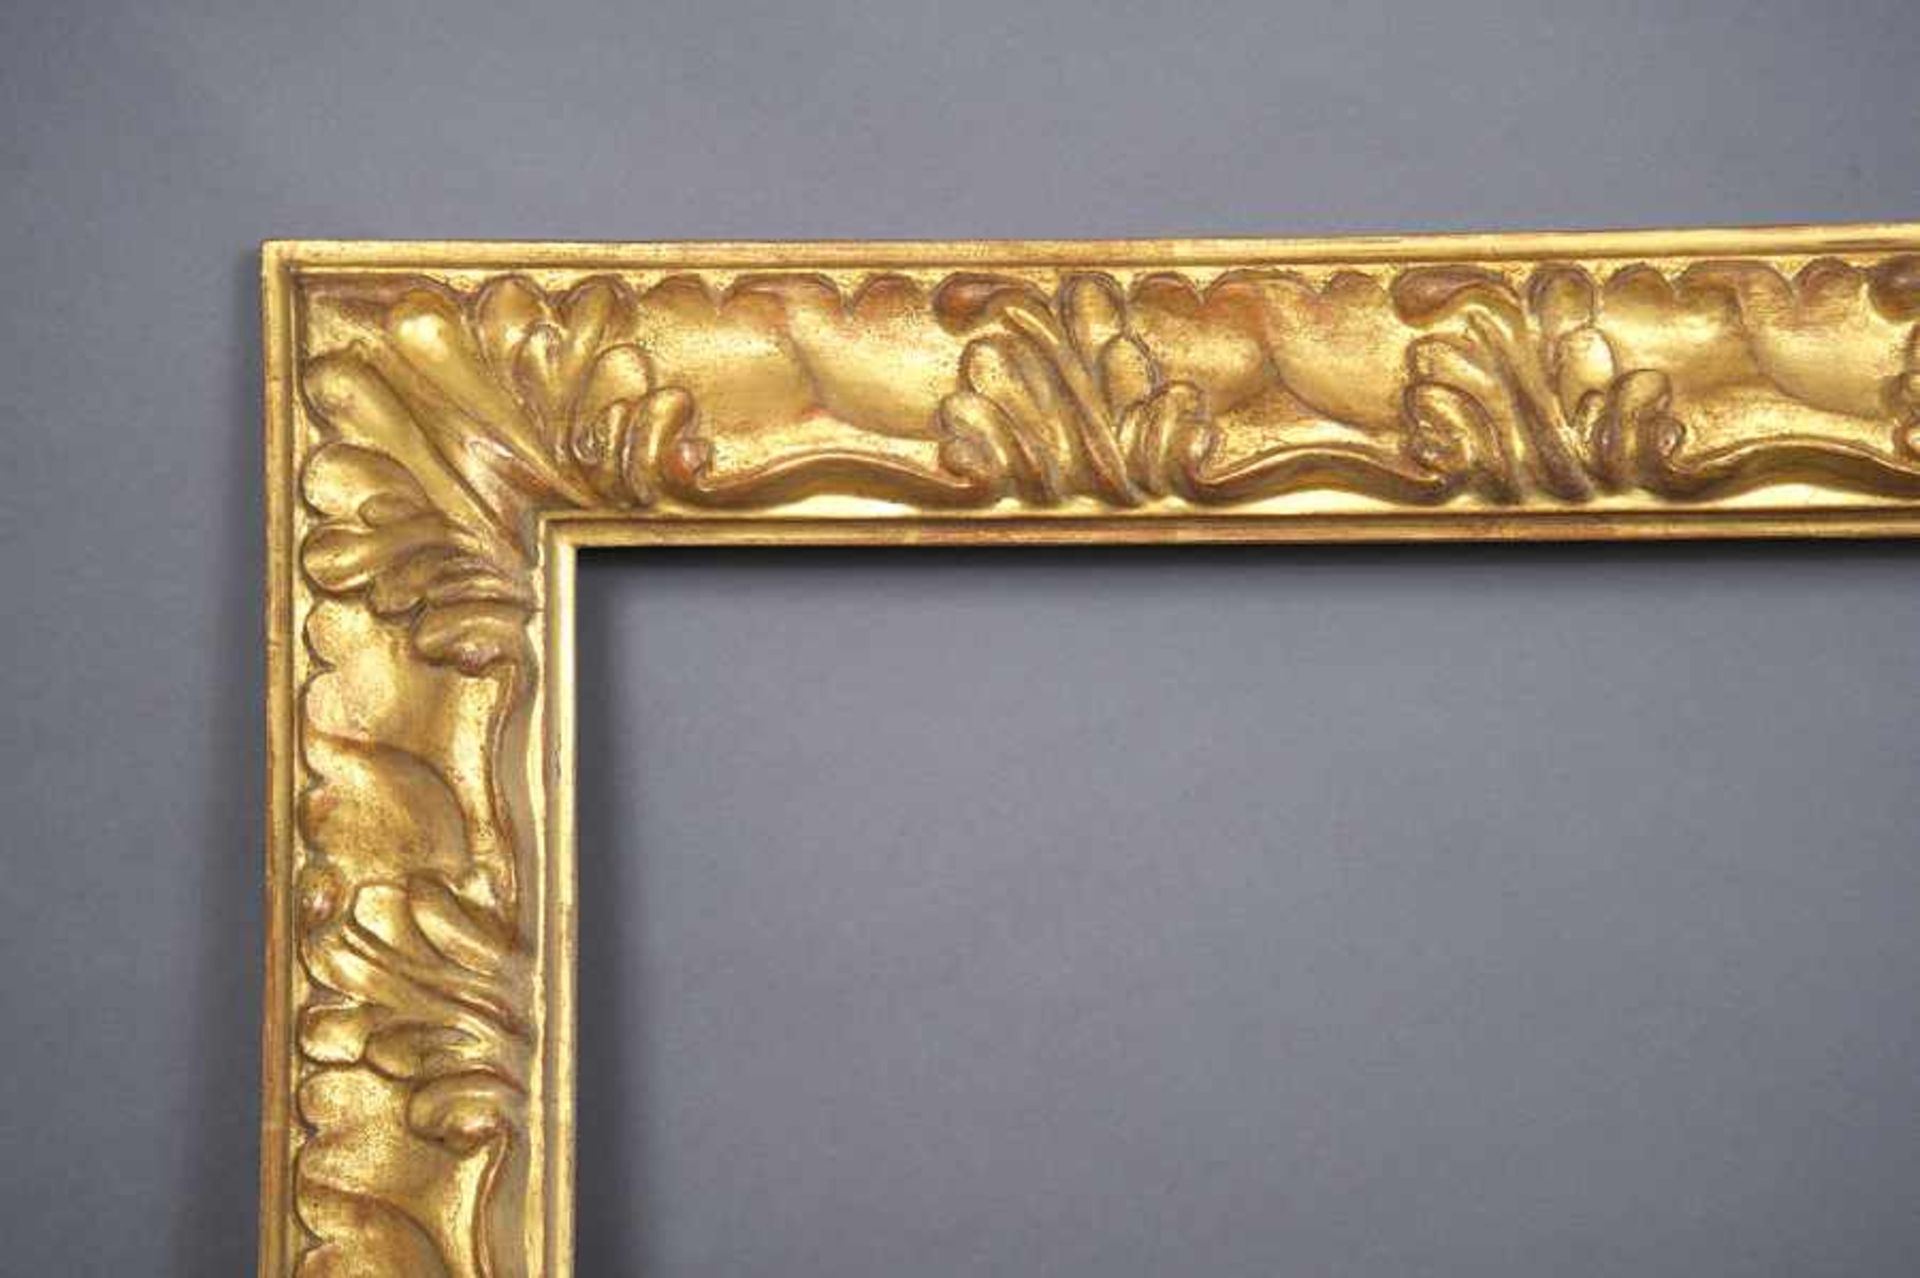 Gold gefasster Rahmen im alten Stil, umlaufend beschnitzt mit floralem Dekor, 82,5x101,5/11,5cm - Bild 2 aus 3